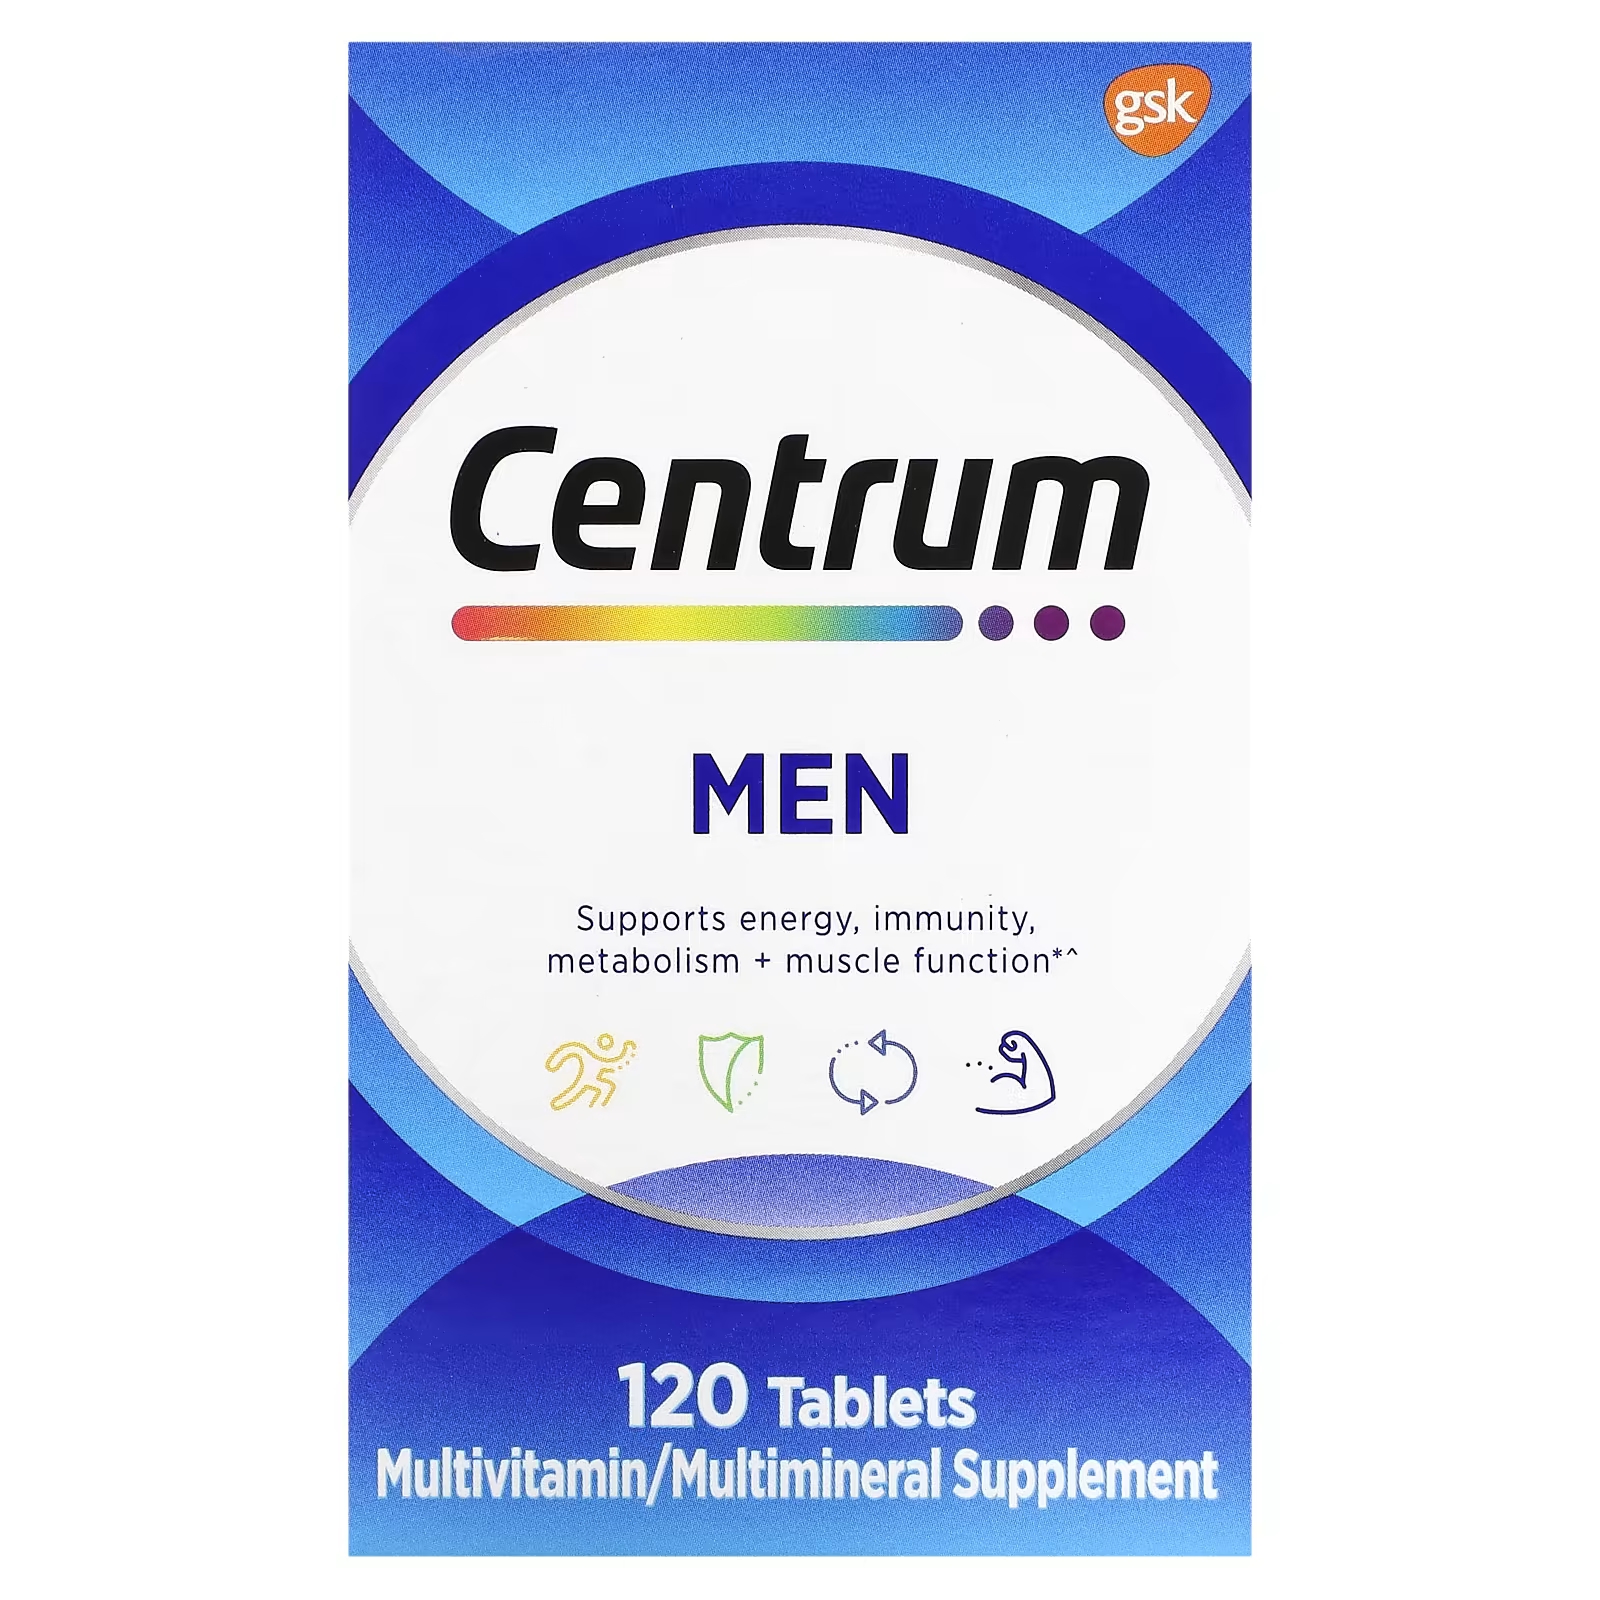 Мультивитамины Centrum для мужчин, 120 таблеток centrum мультивитамины для мужчин 120 таблеток